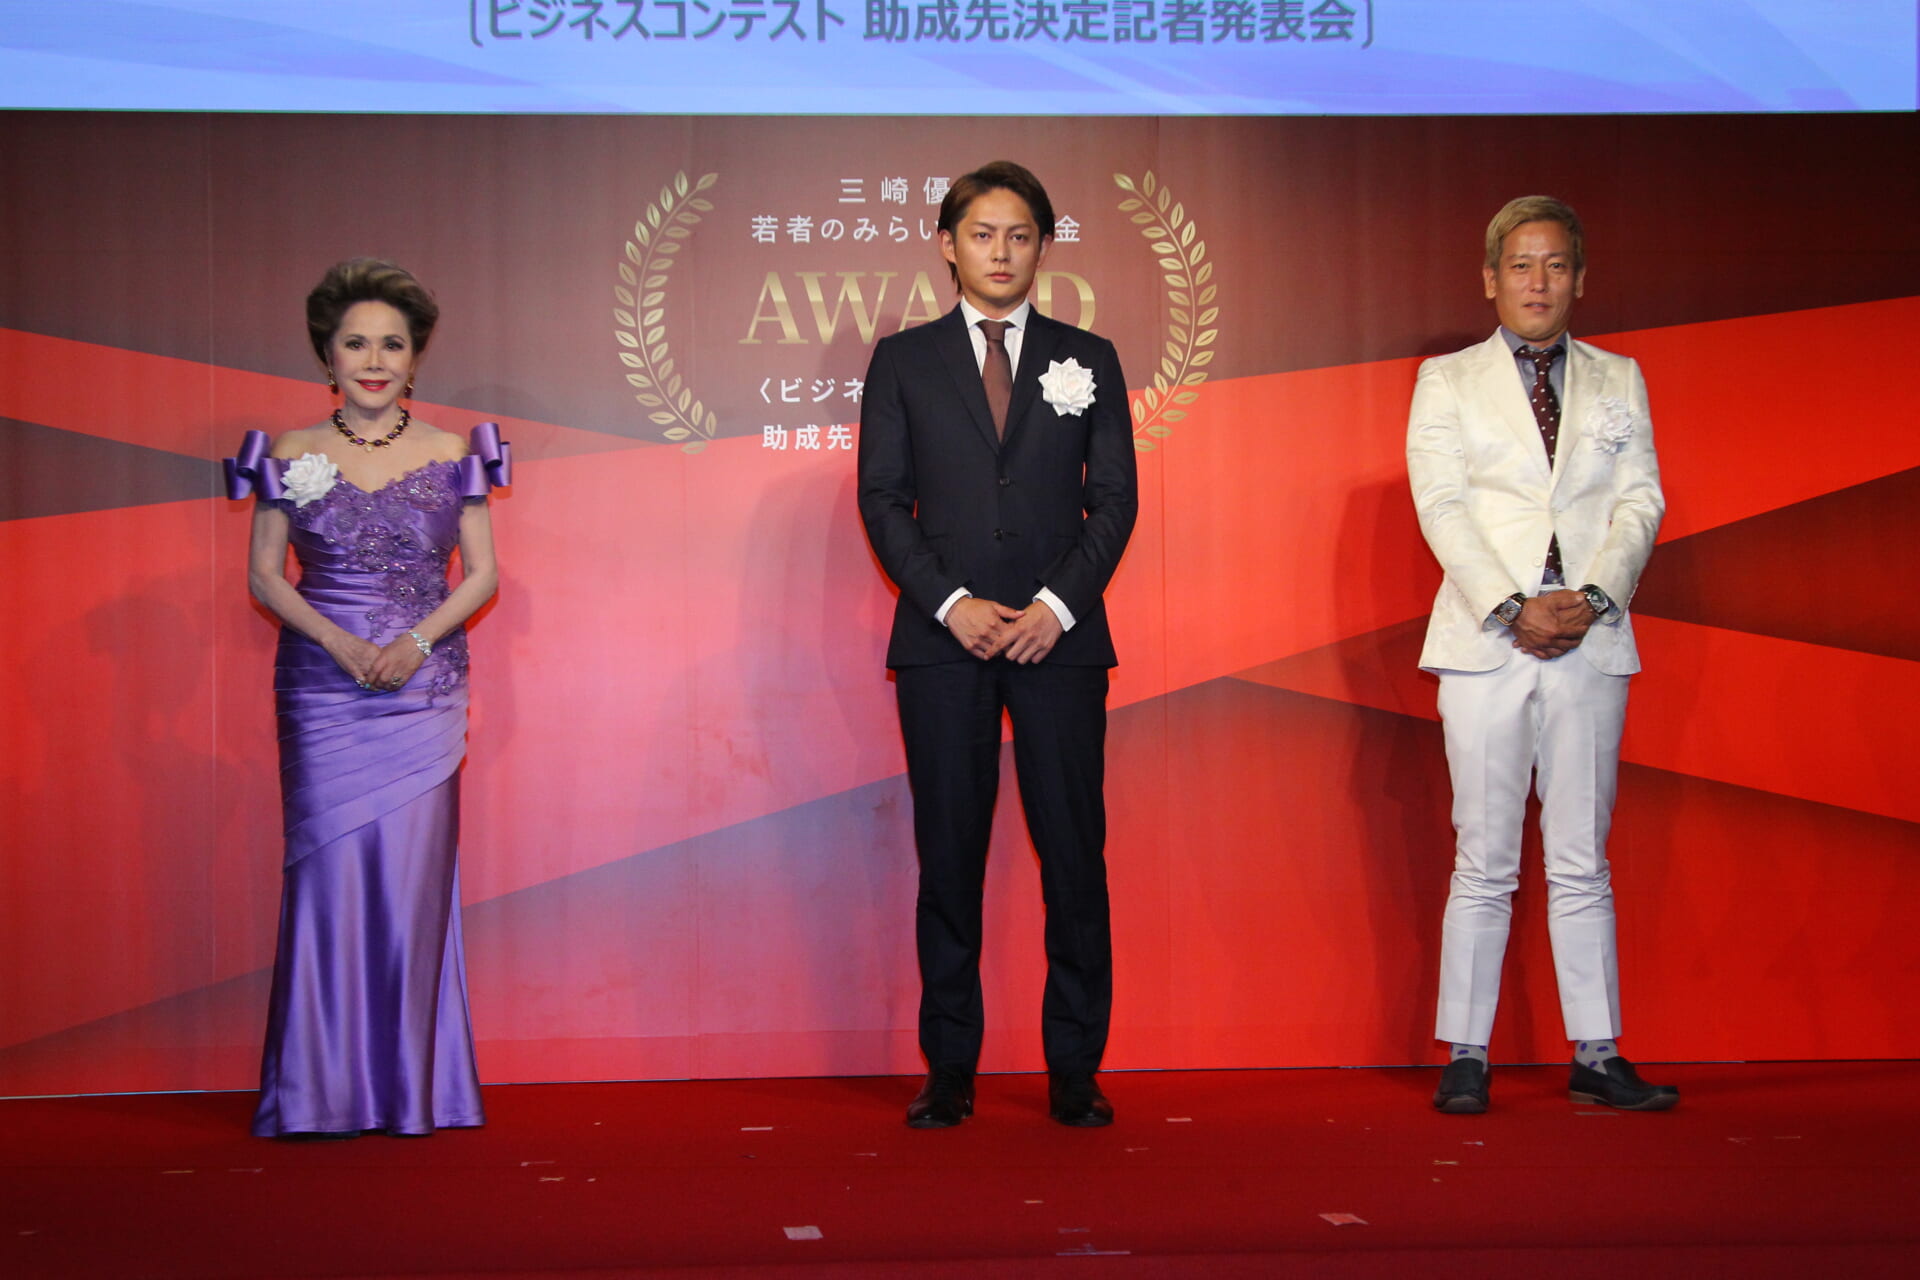 デヴィ夫人、三崎優太 主催のビジコン受賞式で若者にエール「目的、目標、使命感を持っていただきたい」